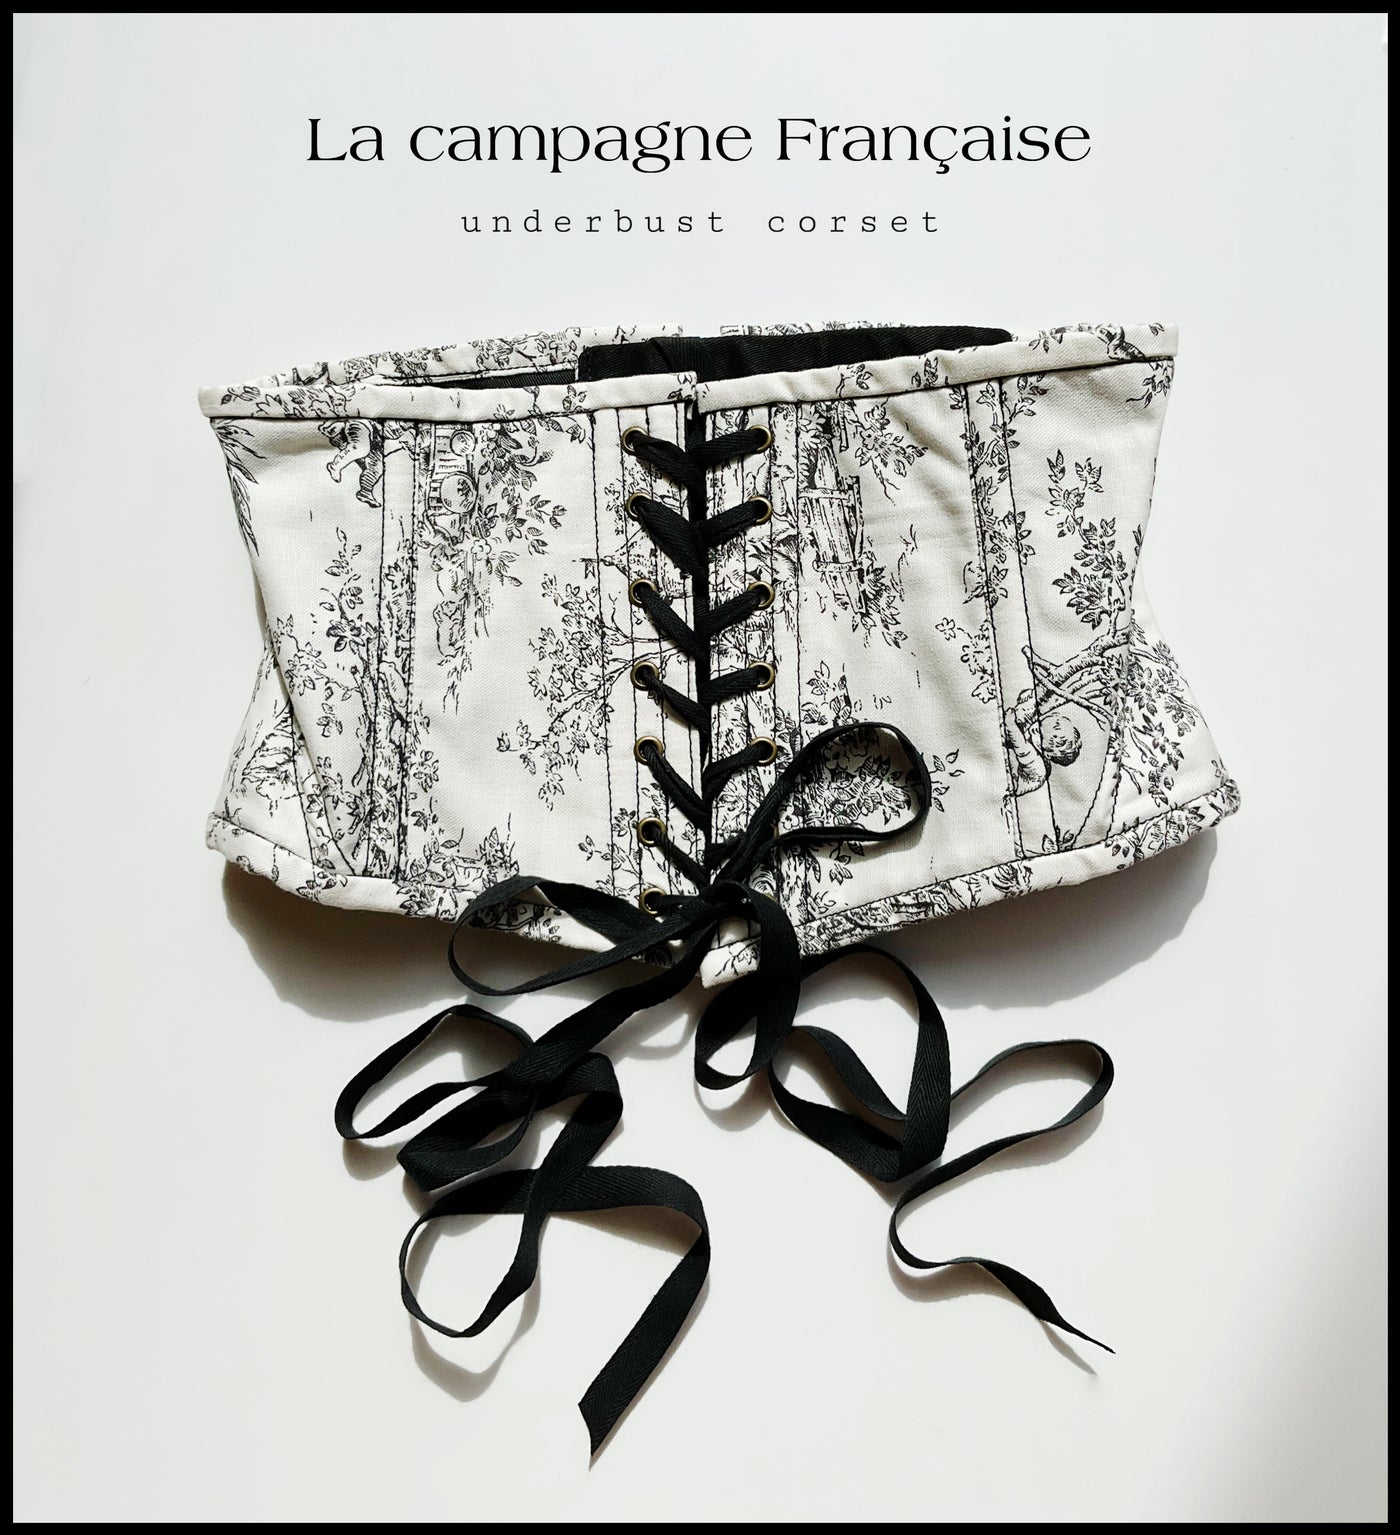 La campagne Française underbust corset